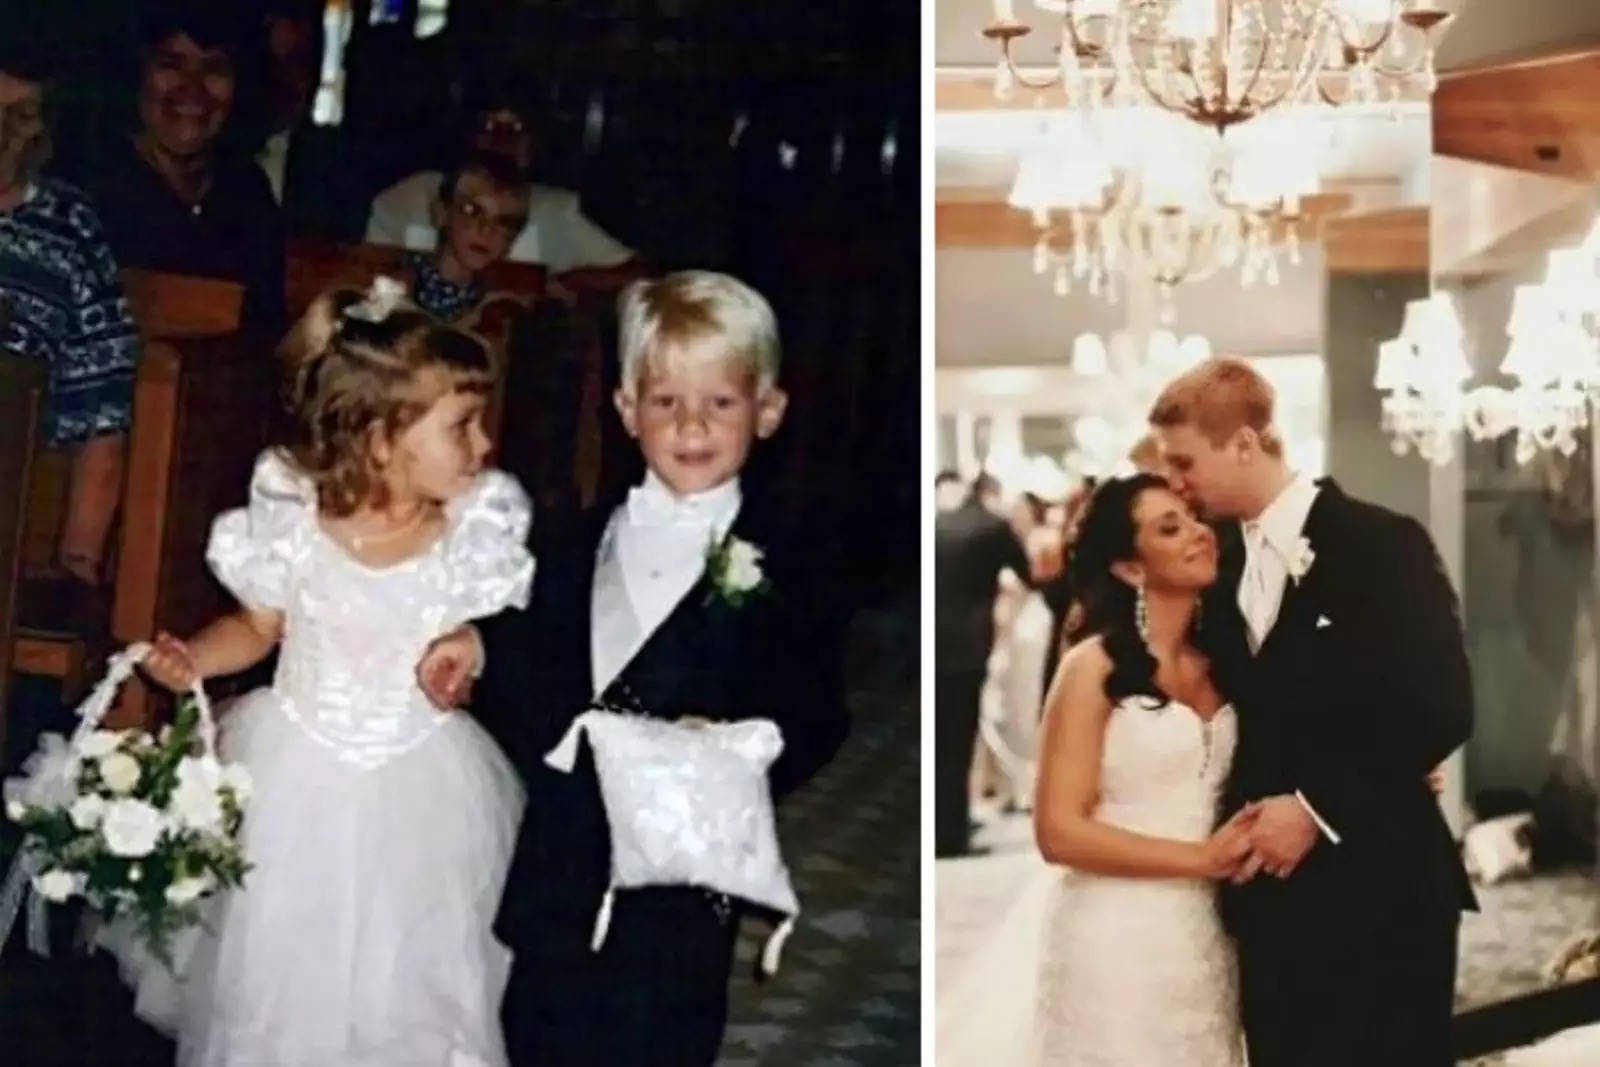 Цветочница и хранитель колец со свадьбы поженились 20 лет спустя.